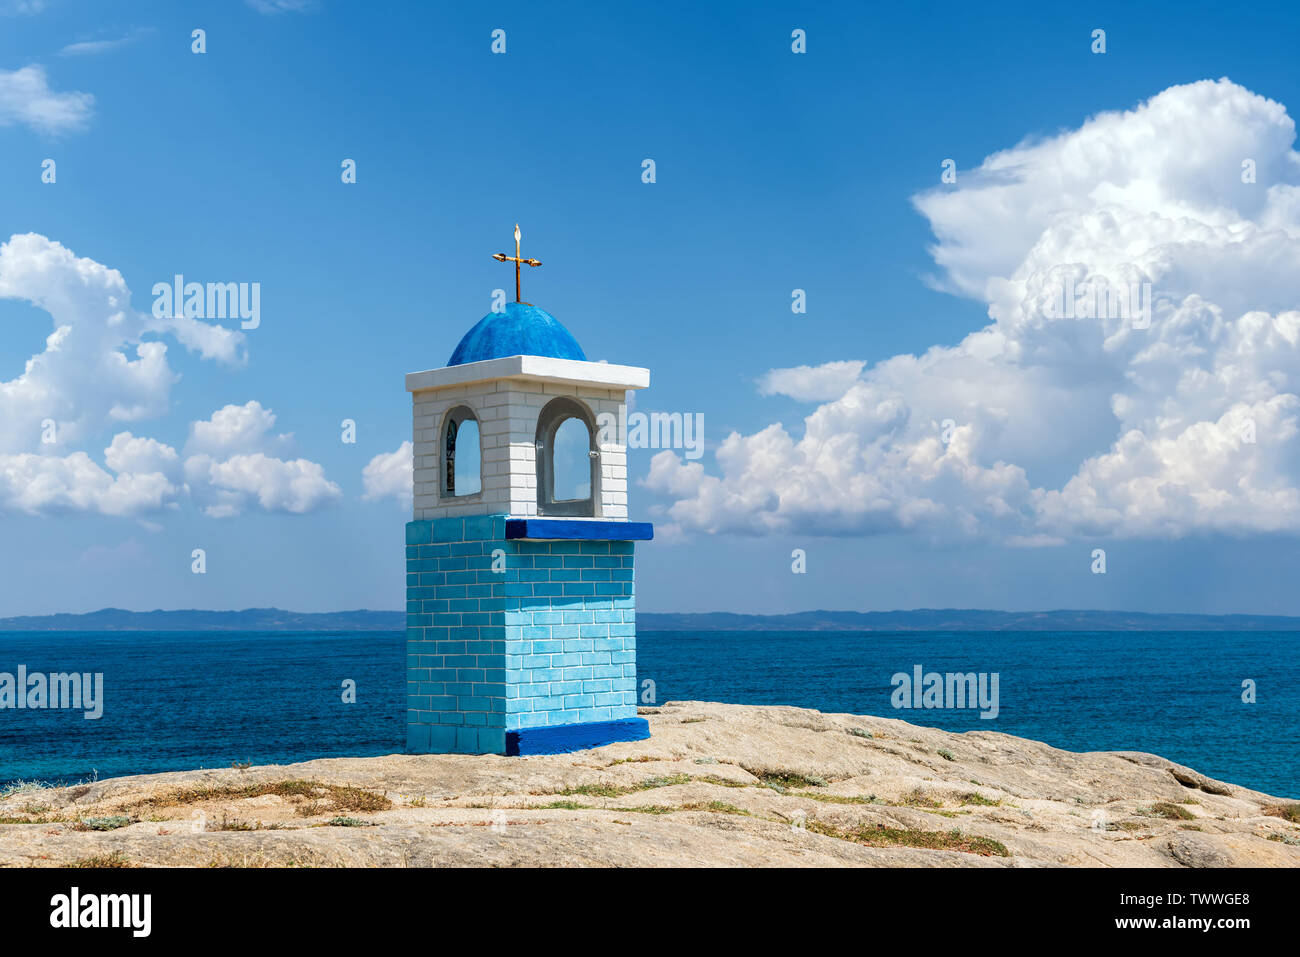 Traditionelle griechische kleine Kirche oder Kapelle. Blauer Himmel mit weißen Wolken und Meer im Hintergrund Stockfoto